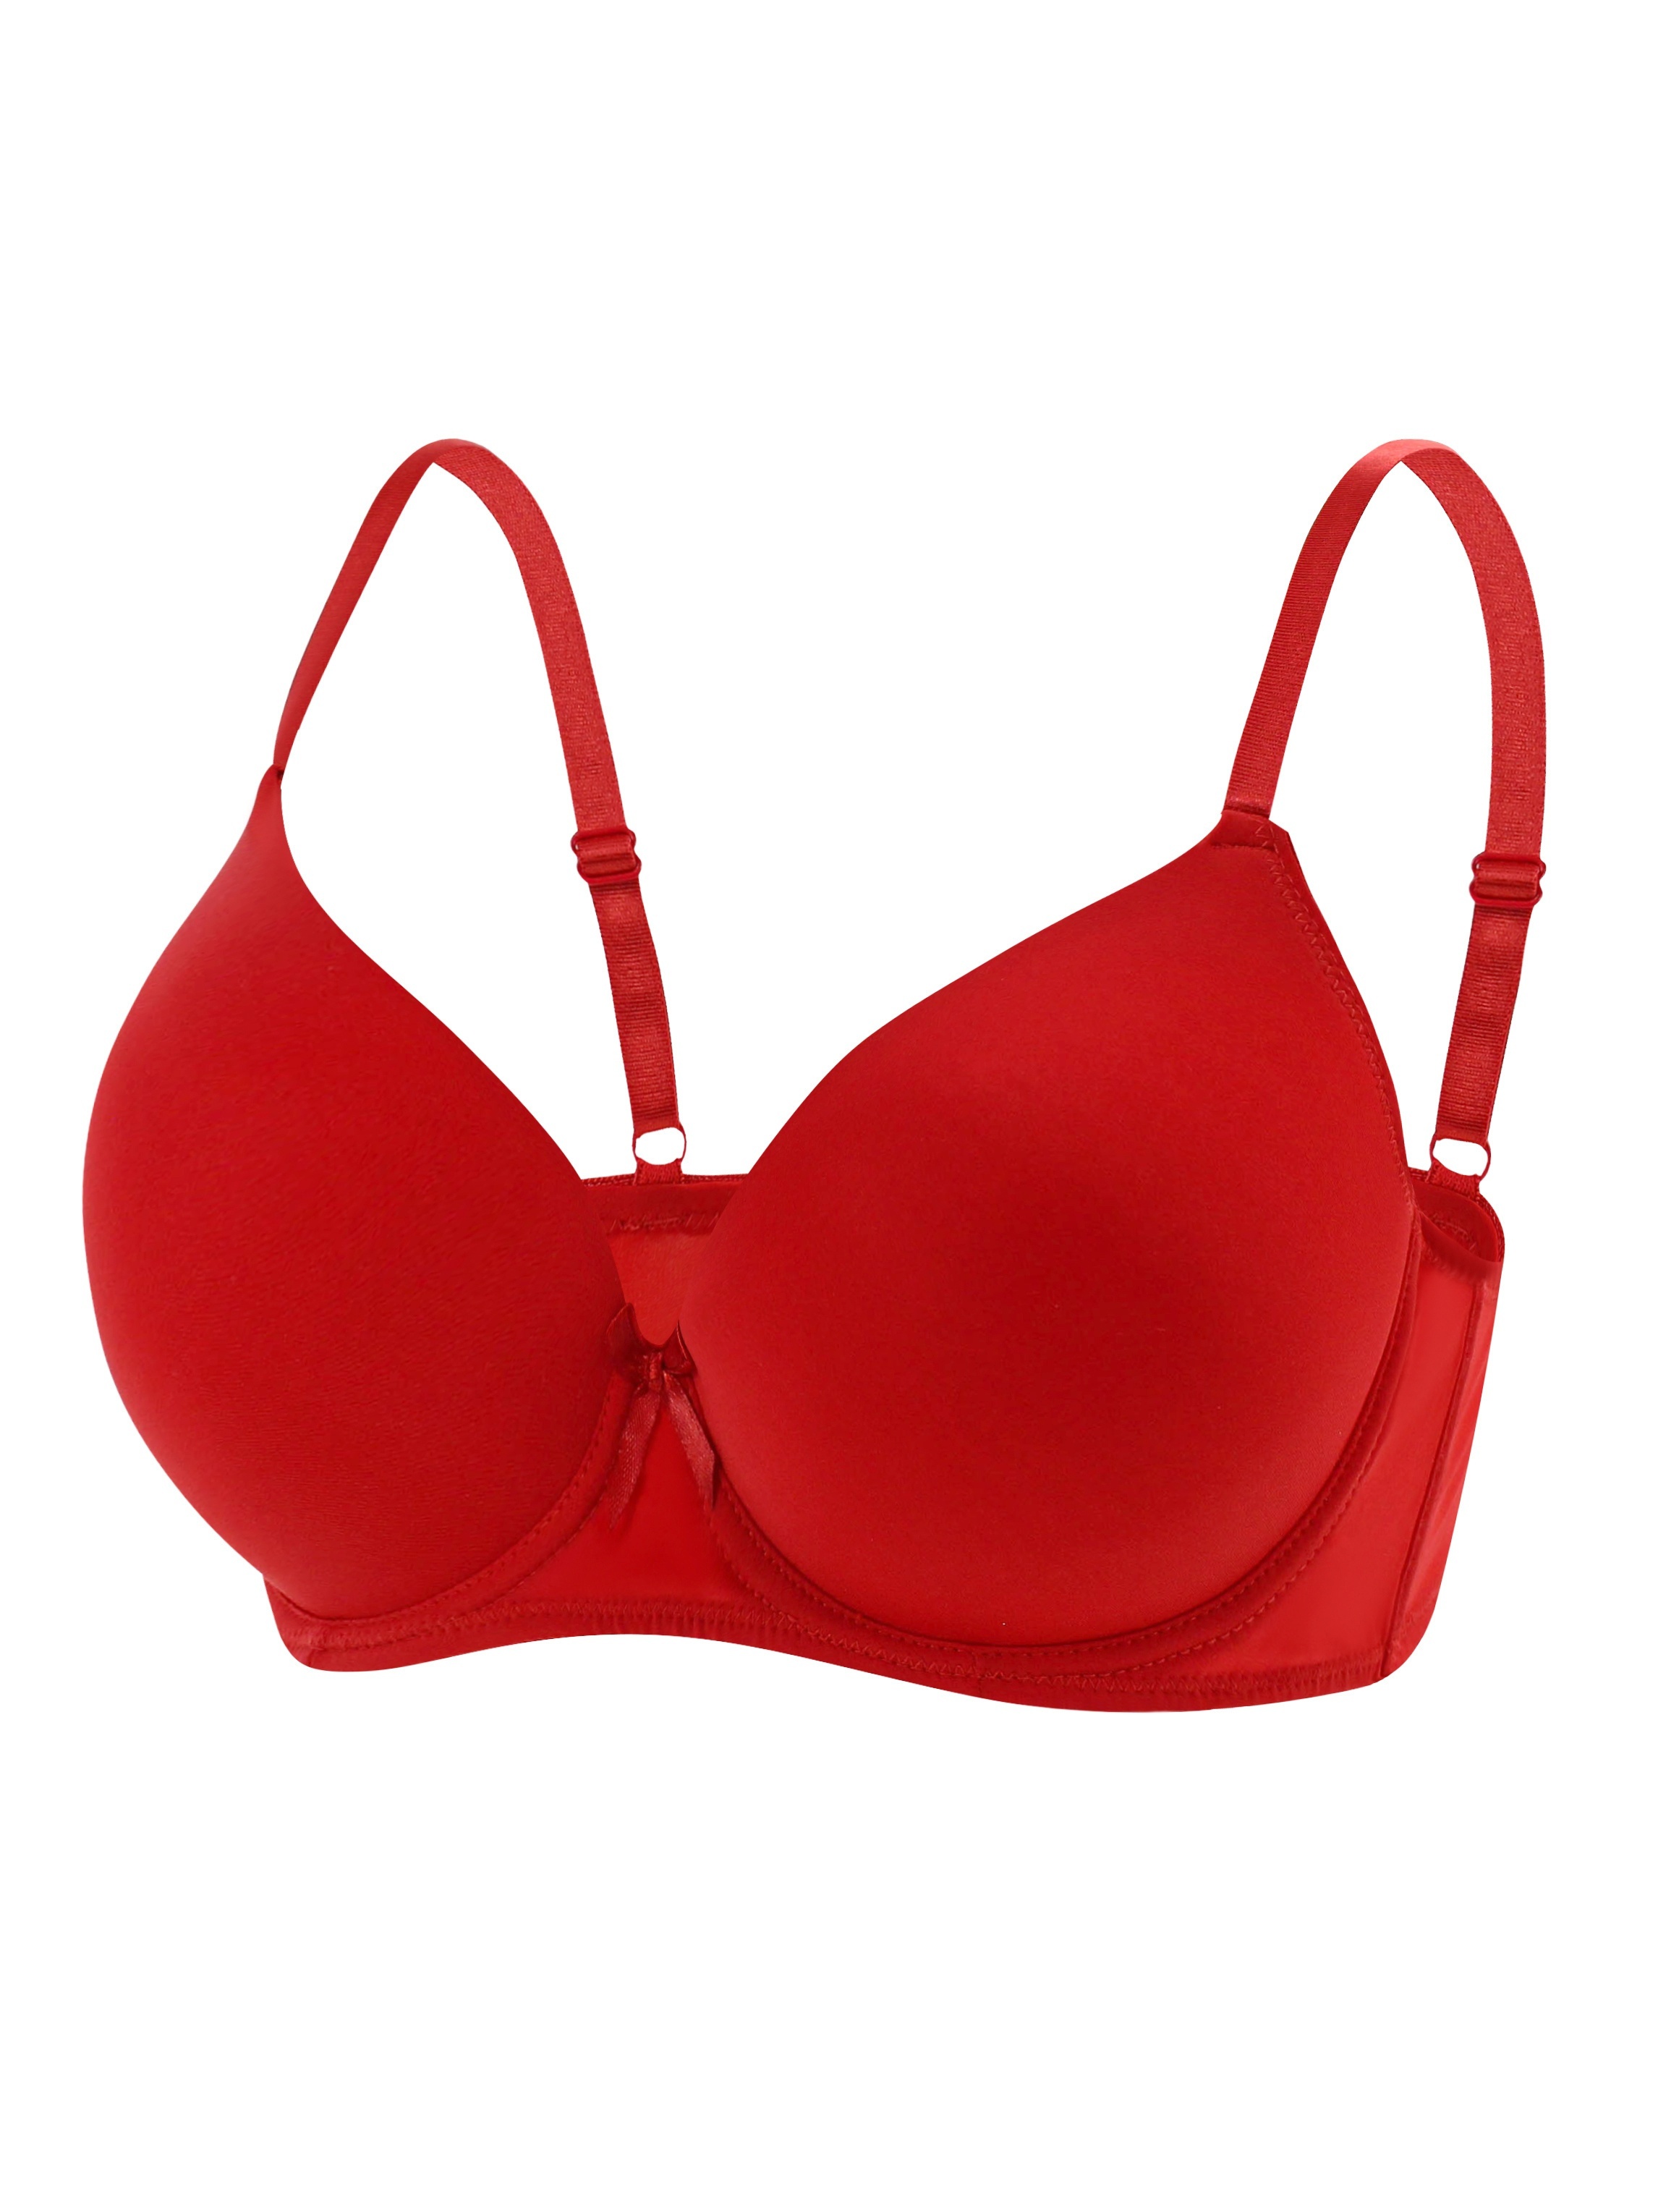 Underwired bra transparent soft cup women's lingerie underwear white black  red